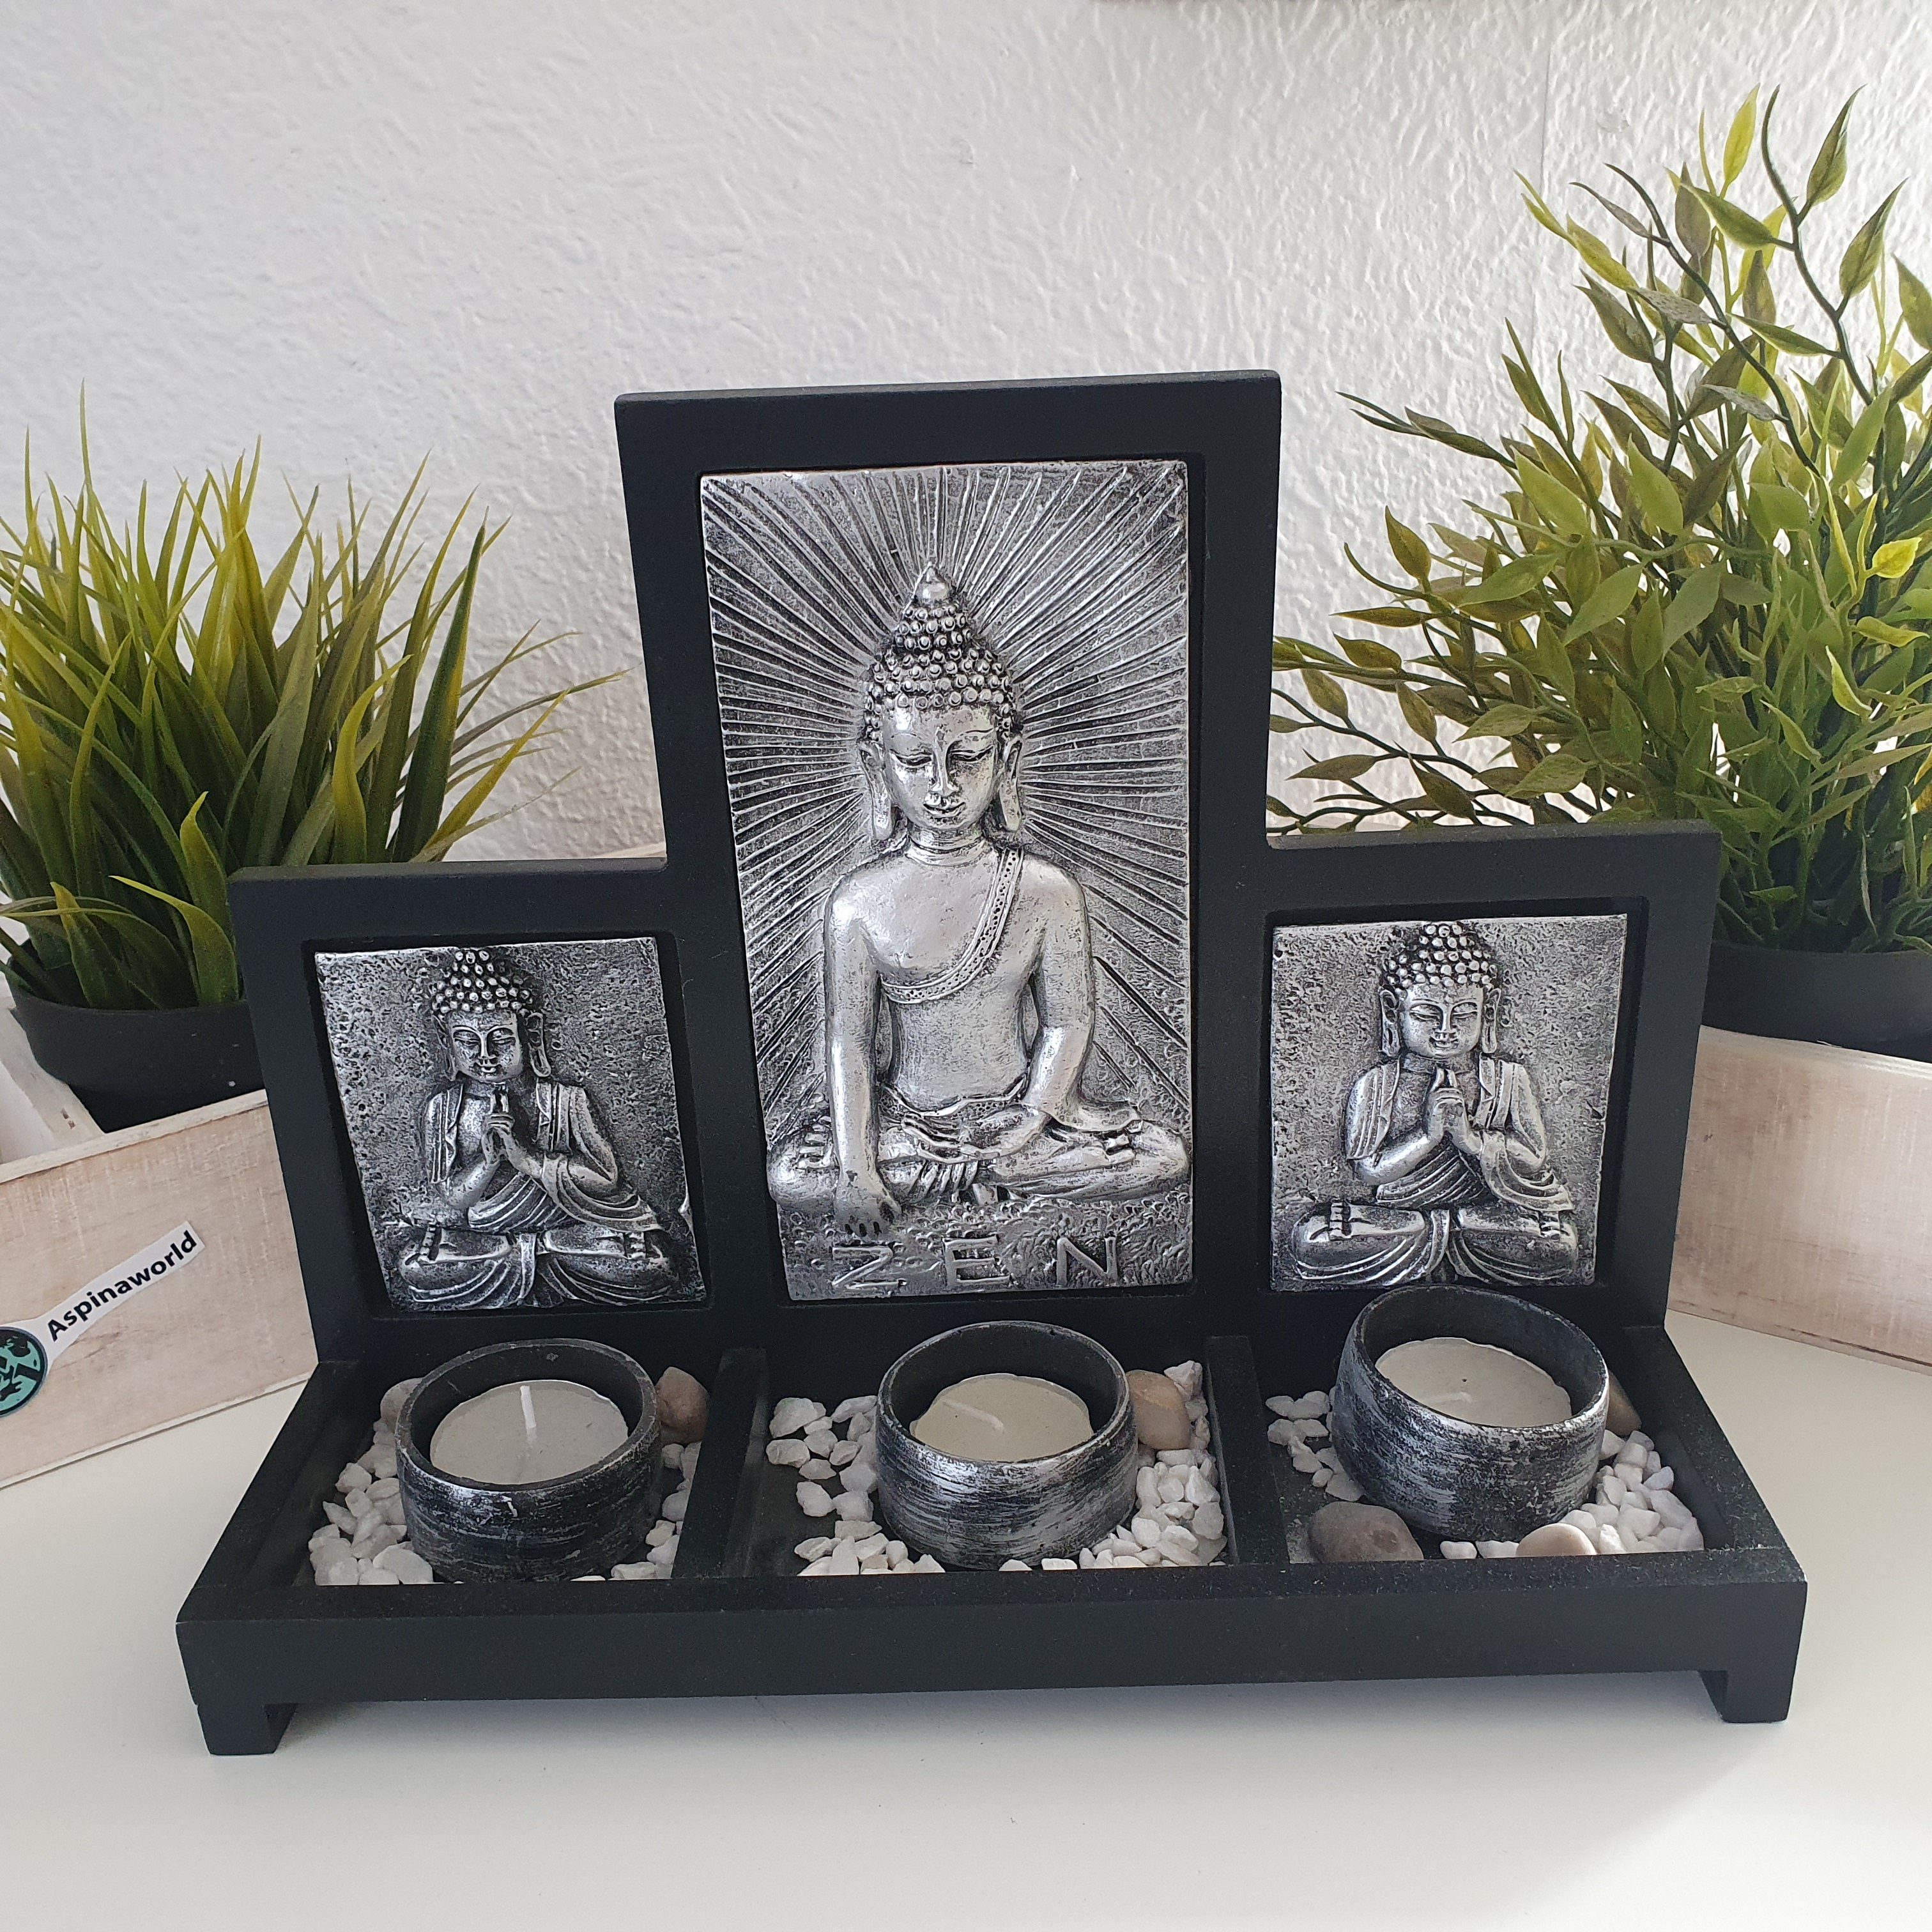 Aspinaworld Teelichthalter Buddha Teelichthalter für 3 Teelichter Silber 22 cm